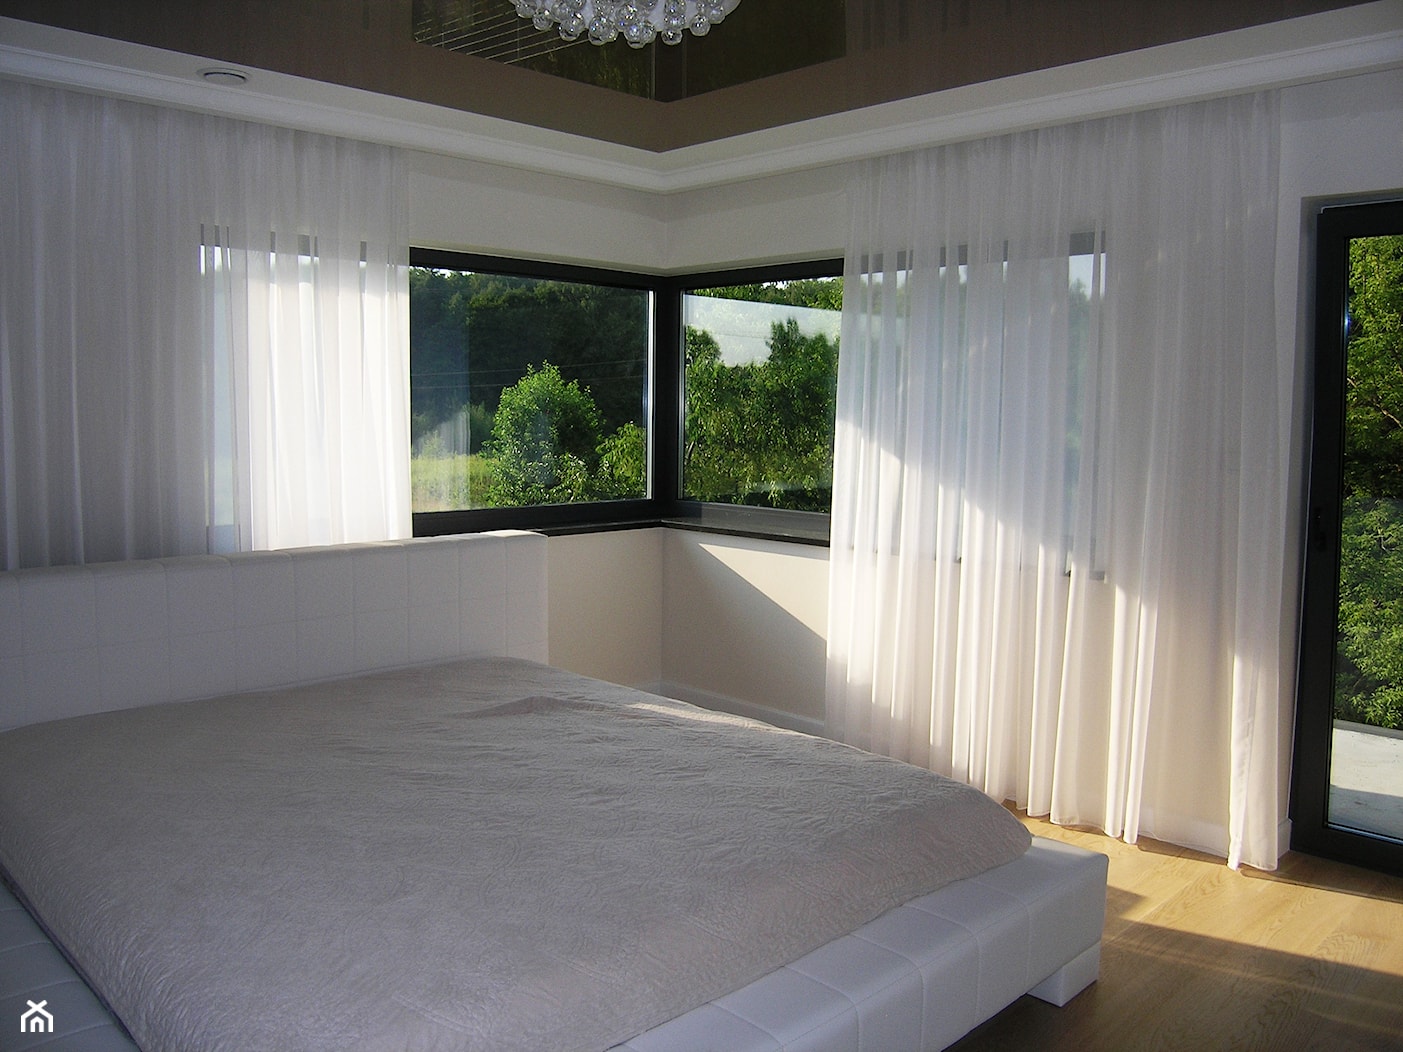 biała sypialnia - zdjęcie od firanelle.pl - Homebook